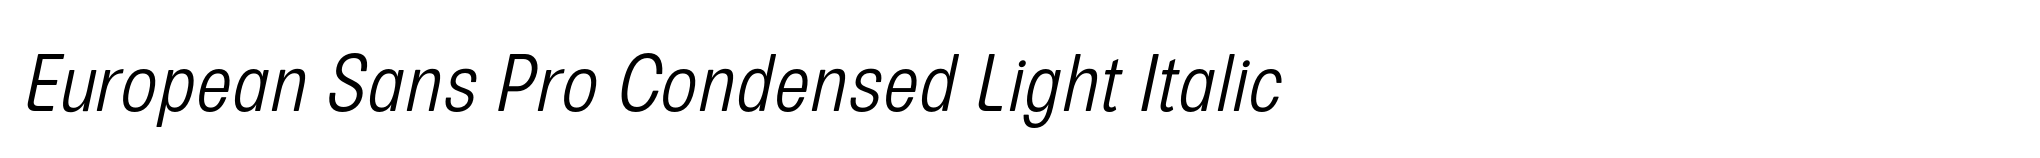 European Sans Pro Condensed Light Italic image